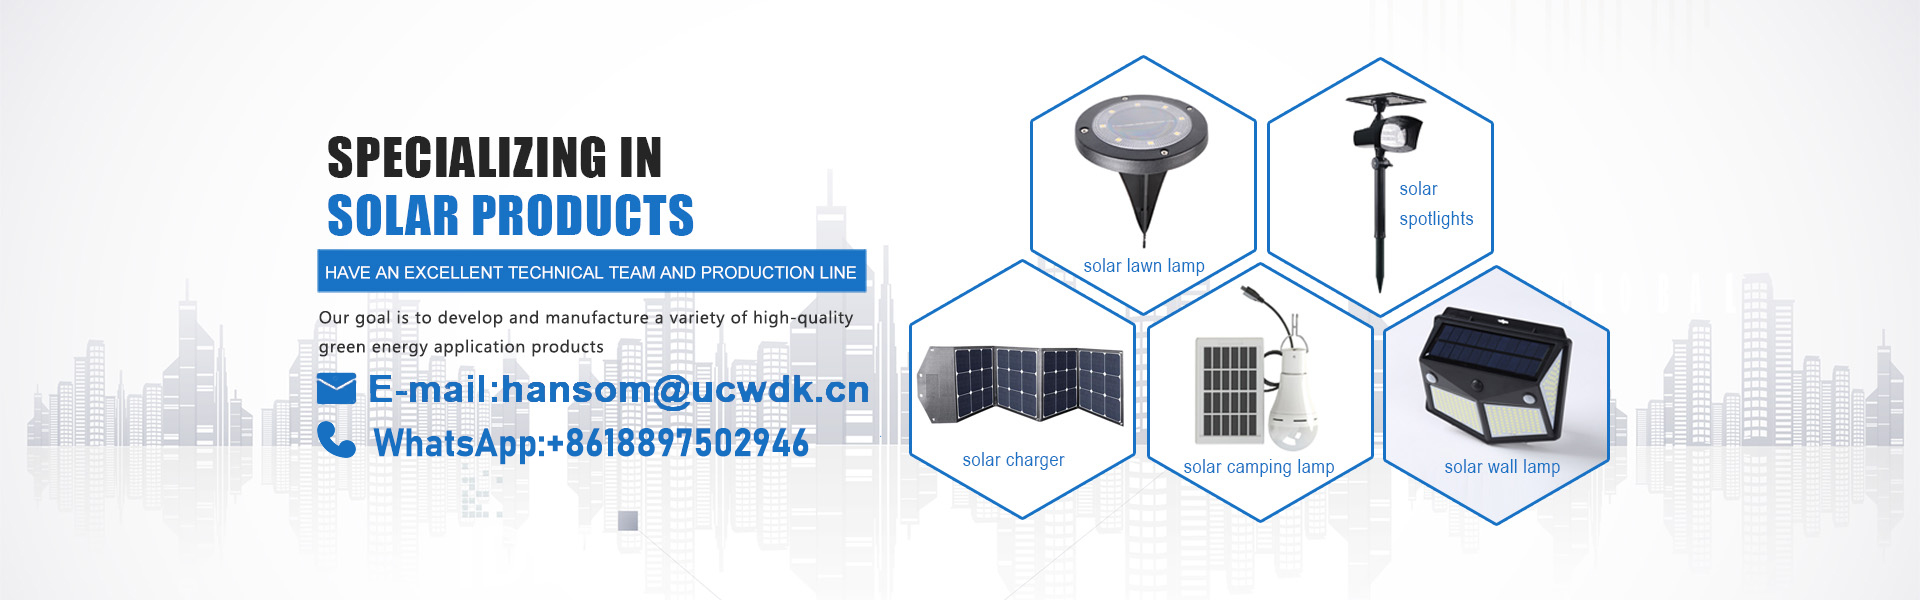 Chargeur solaire, lumière solaire, panneau solaire,UCWDK Solar Technology Co. Ltd.